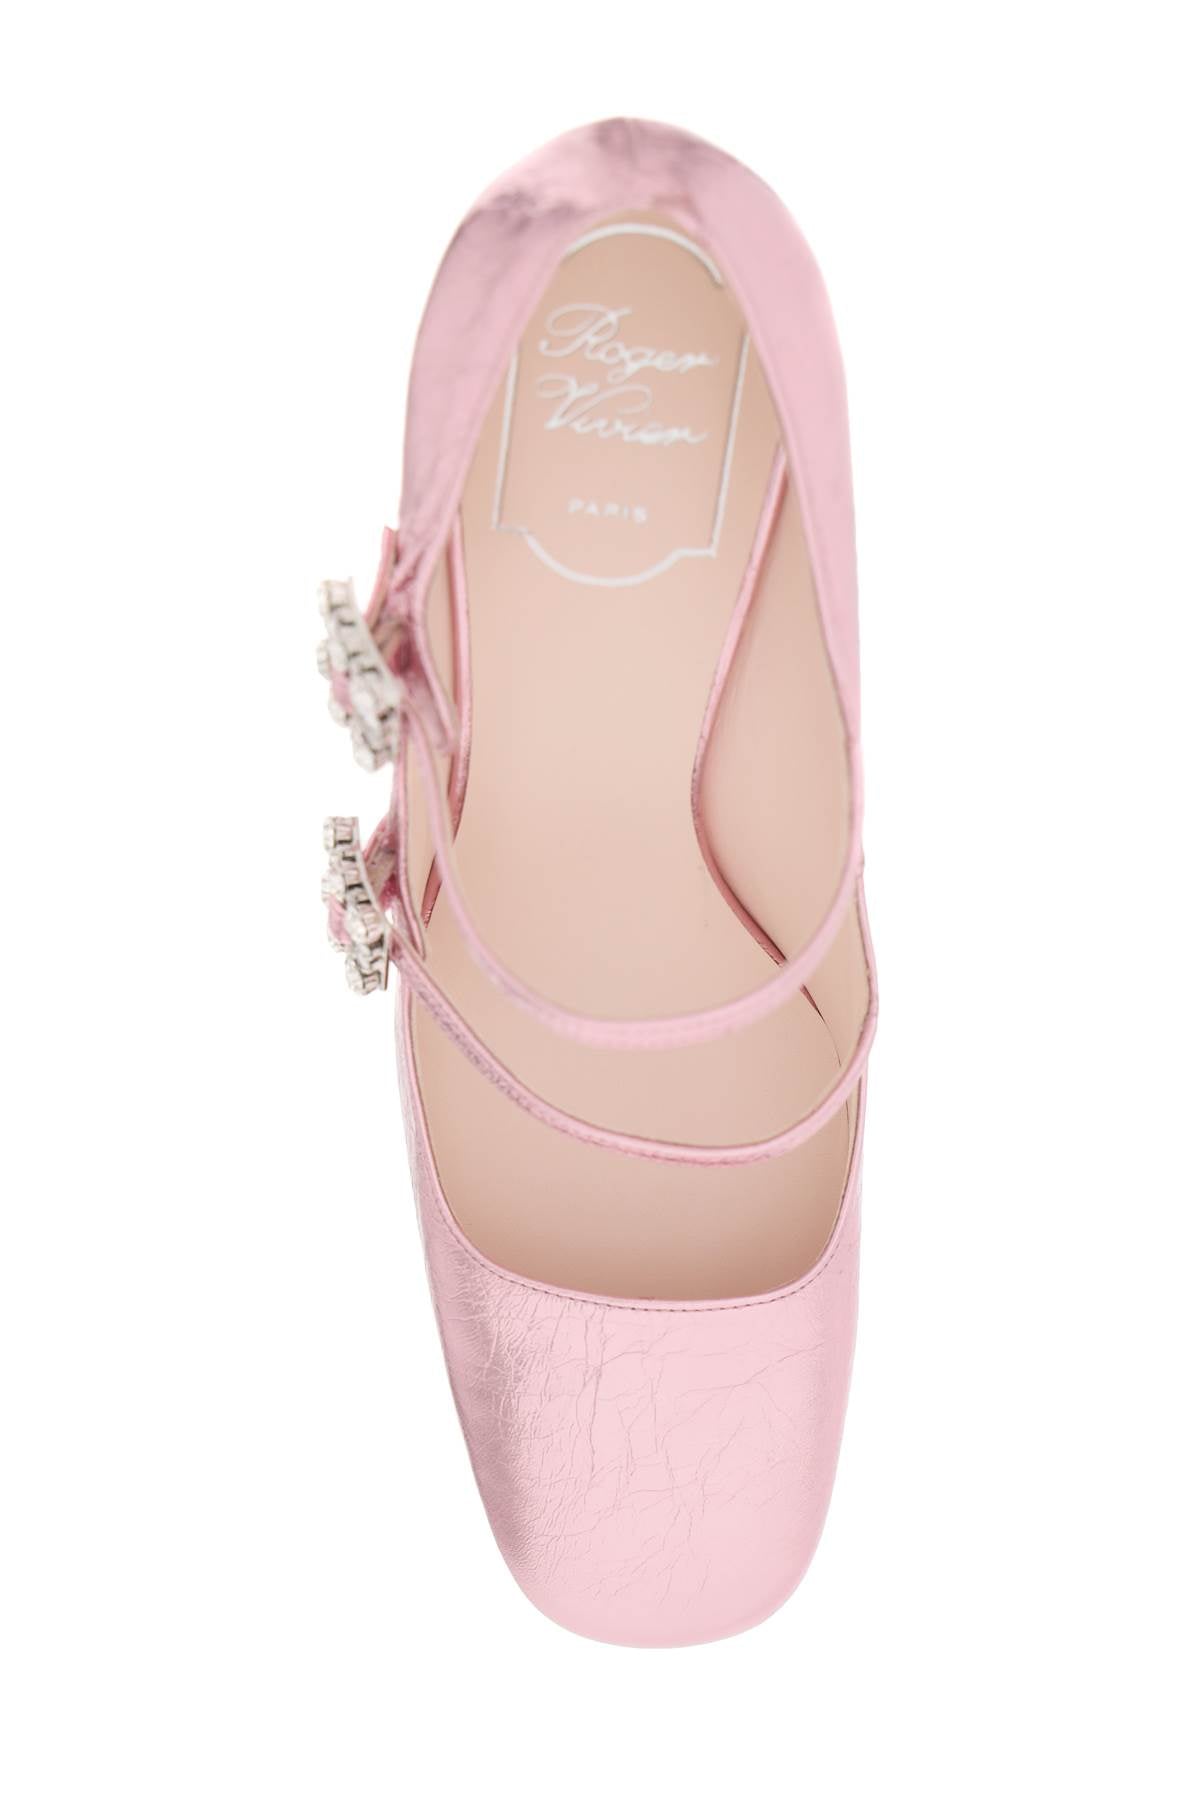 حذاء ماري جين كحلي مع حزام مرن مزين بإبزيم ماسي وتصميم مصنوع من جلد معدني مكسر - مجموعة SS24